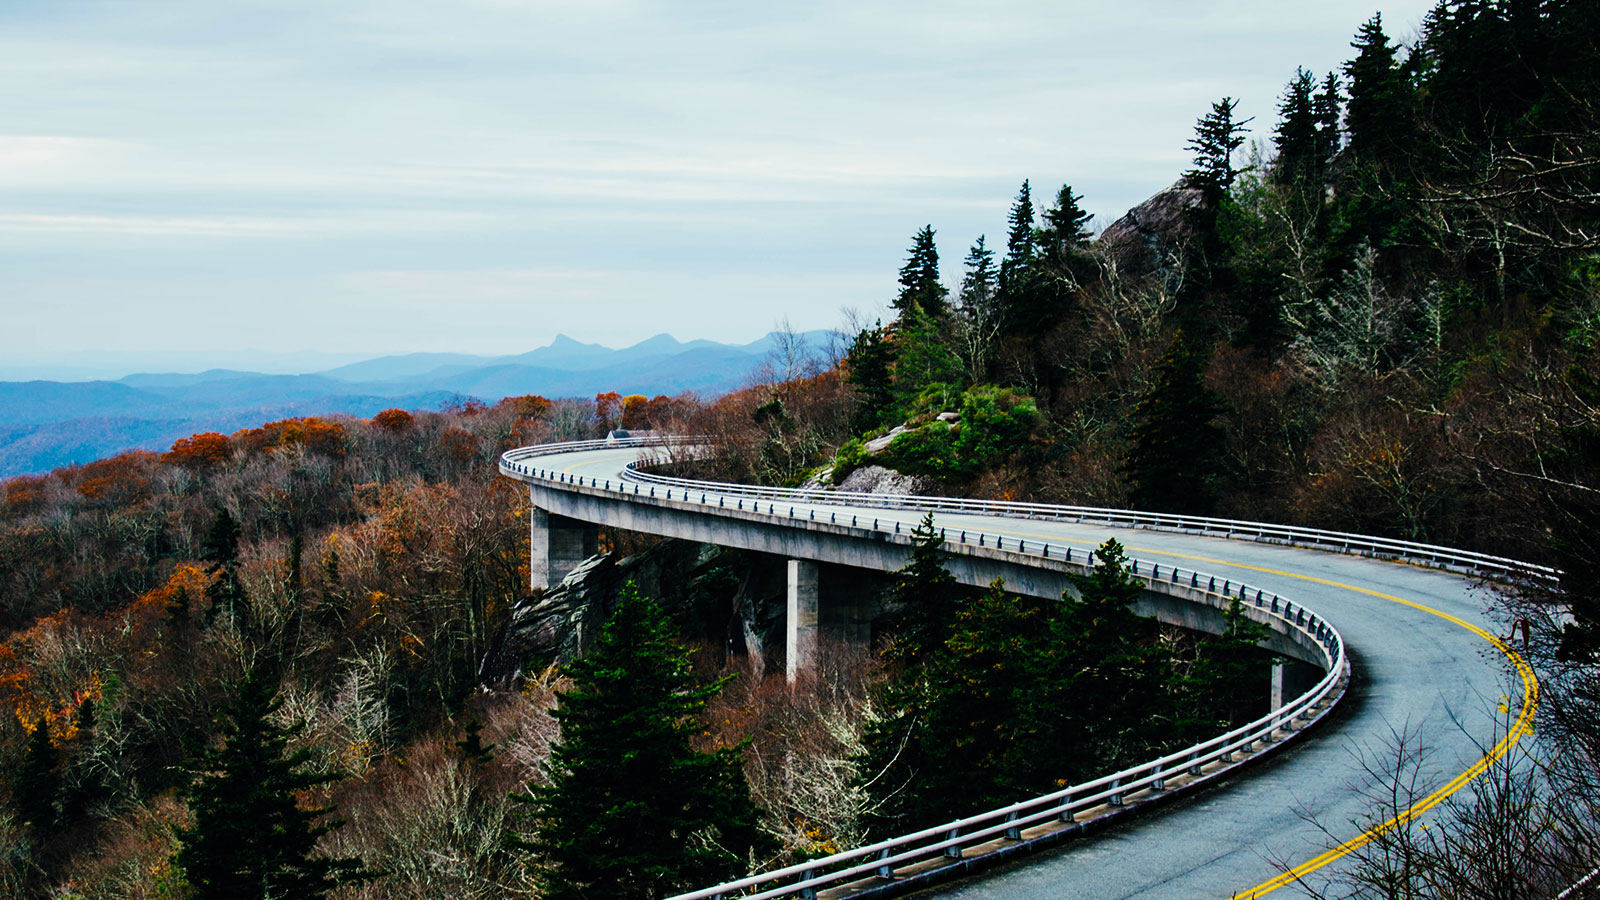 Carretera en curva entre las montañas llenas de árboles.